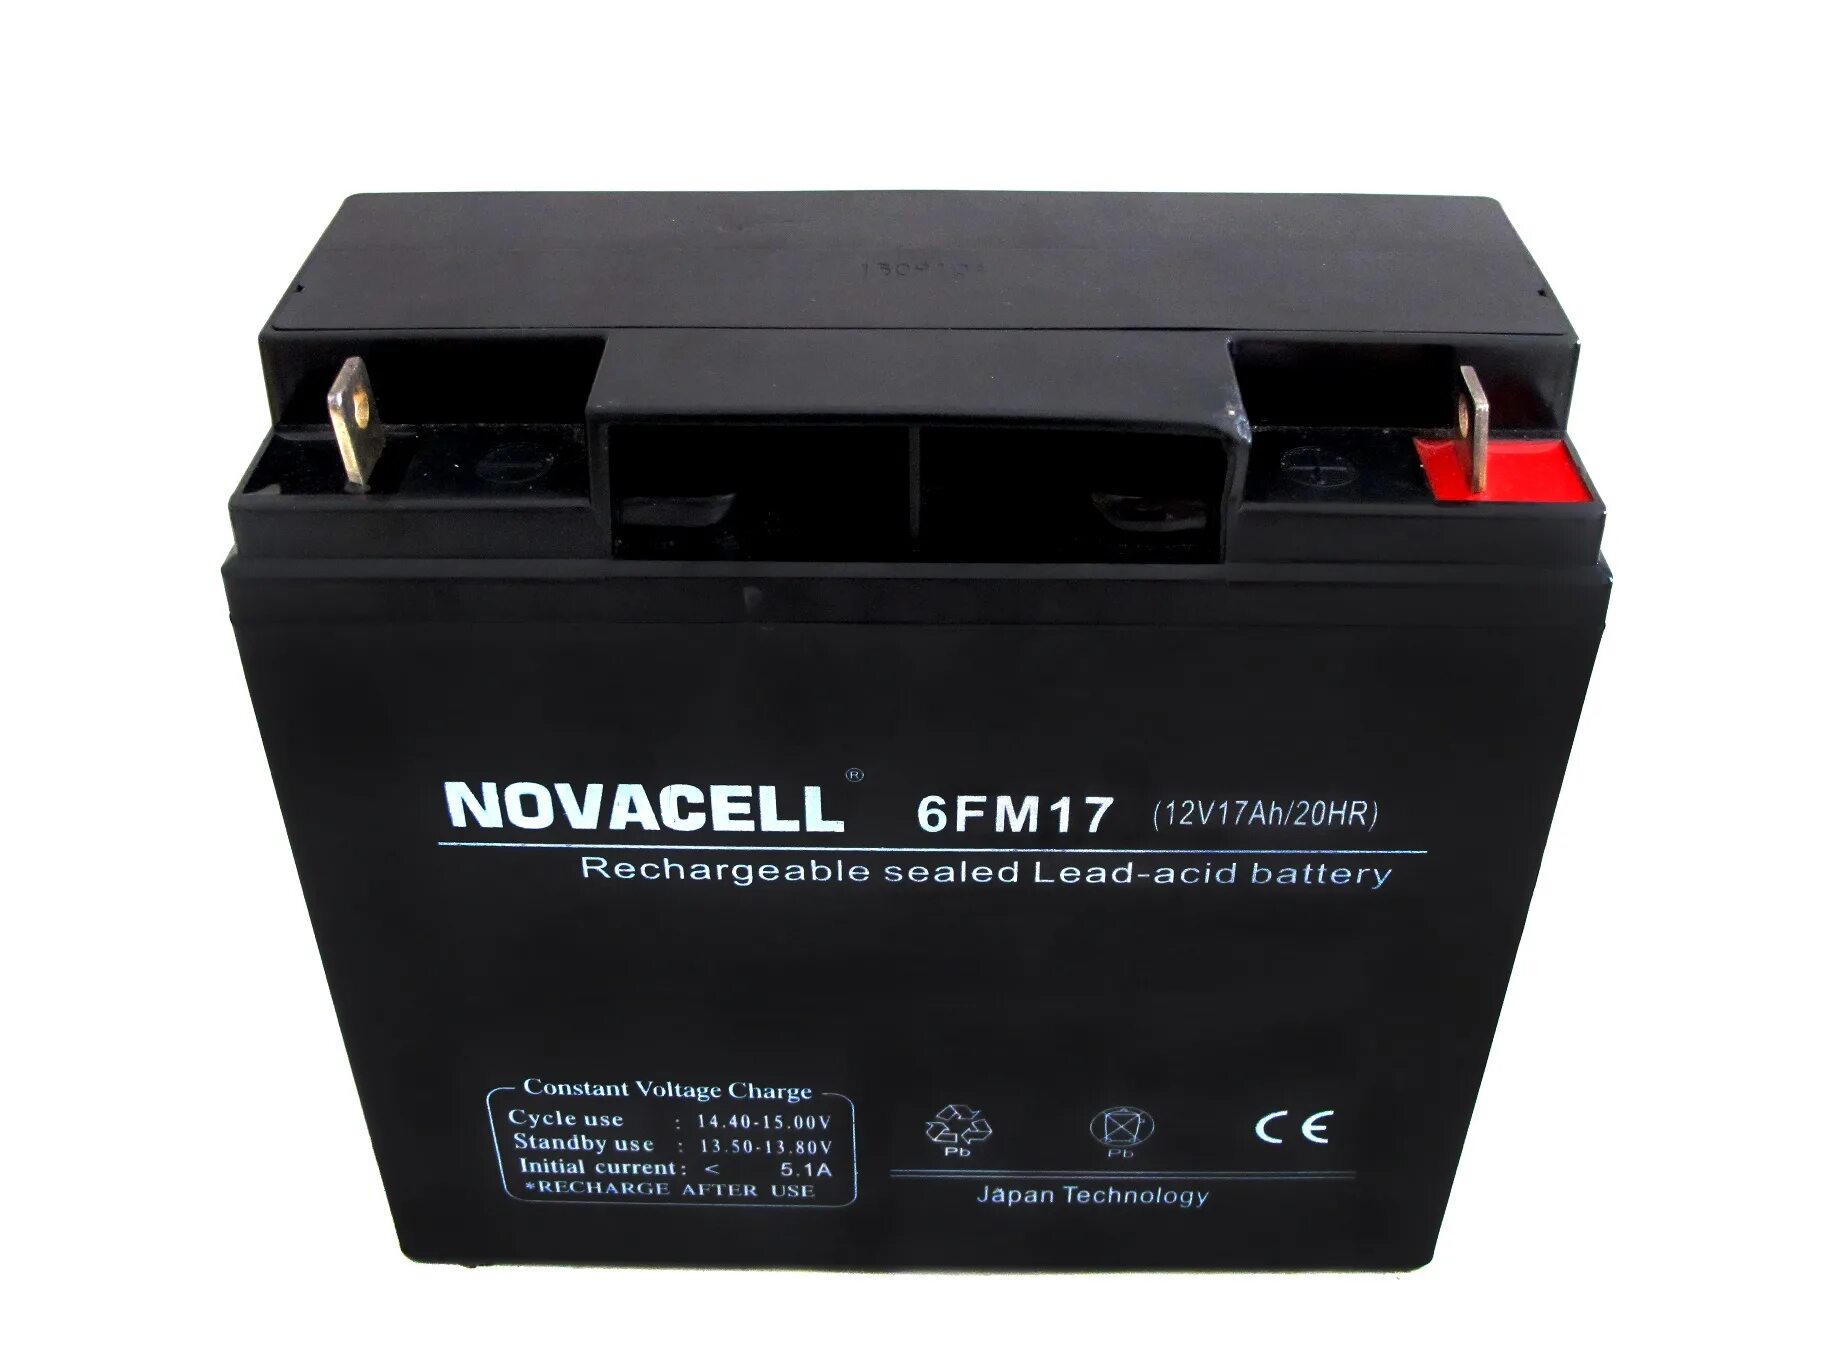 Аккумуляторы Denzel lead acid Battery 6-fm-18 12v 17ah 204 WH. Bestway Sealed Rechargeable lead-acid Battery sp12-13a. АКБ Panasonic 12v 17ah. Аккумуляторная батарея Hyundai 12v 36ah.